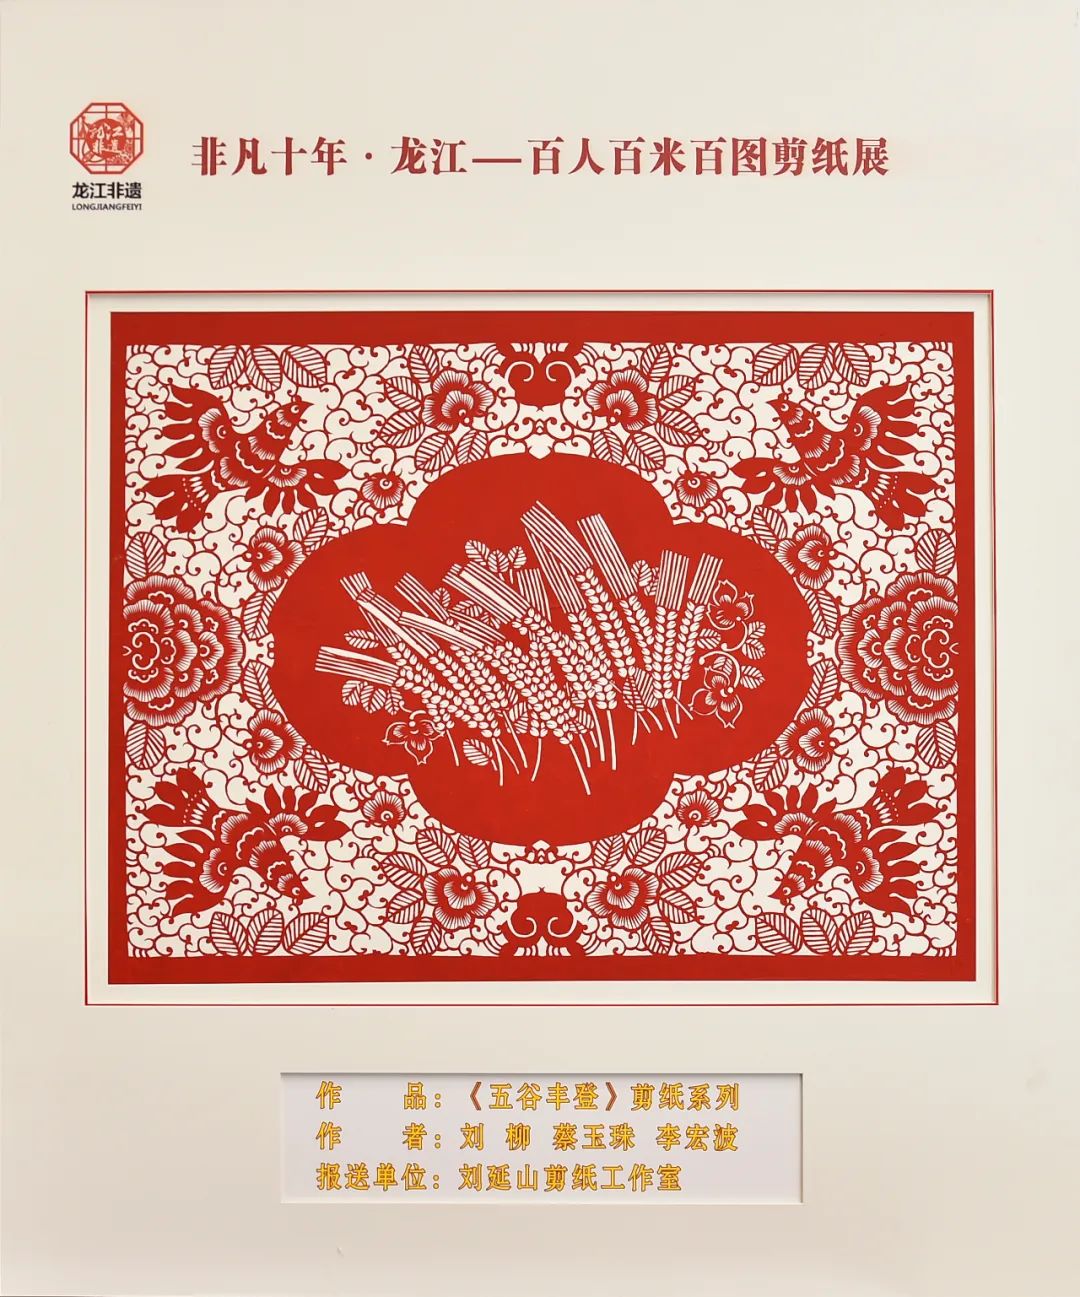 非凡十年·龙江——百人百米百图剪纸展在中共黑龙江省委党校展出